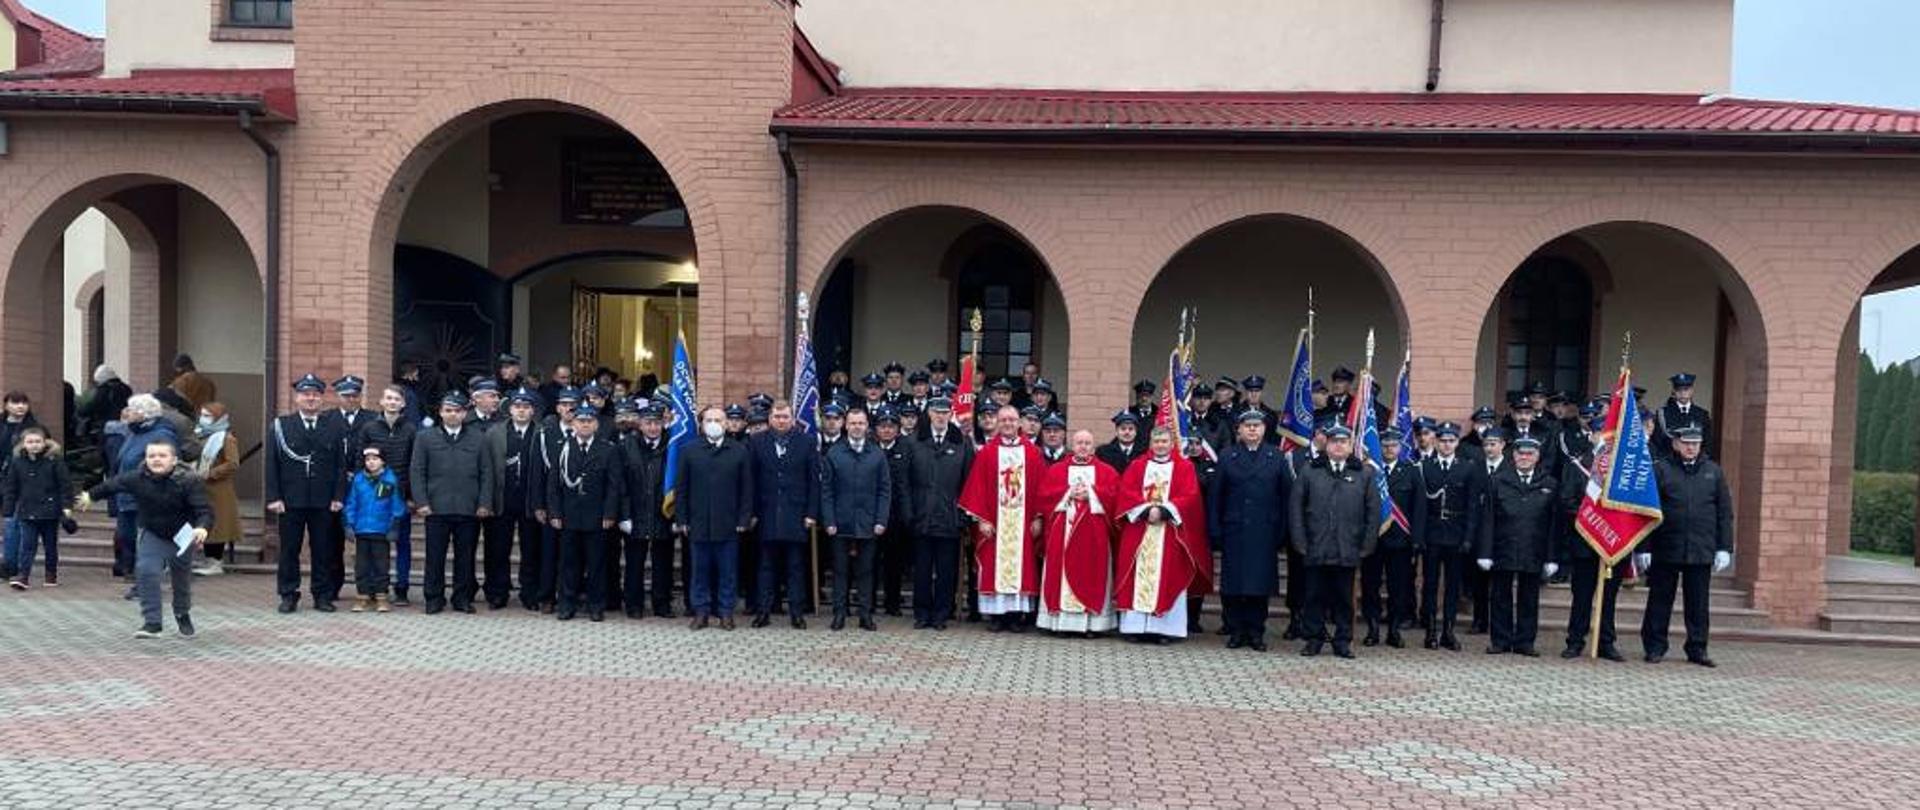 Zdjęcie przedstawia pozujących do zdjęcia grupowego strażaków z powiatu zambrowskiego ubranych w mundury wyjściowe ze sznurem galowym, część strażaków dodatkowo w strażackich kurtkach zimowych. Na zdjęciu poza strażakami pozują również przedstawicie władz oraz księża ustawieni w centralnej części zdjęcia. Zdjęcie wykonano w pochmurny, jesienny dzień na placu przed wejściem do Kościoła Rzymskokatolickiego pod wezwaniem świętego Józefa Rzemieślnika w Zambrowie. W tle widać część budynku kościoła.